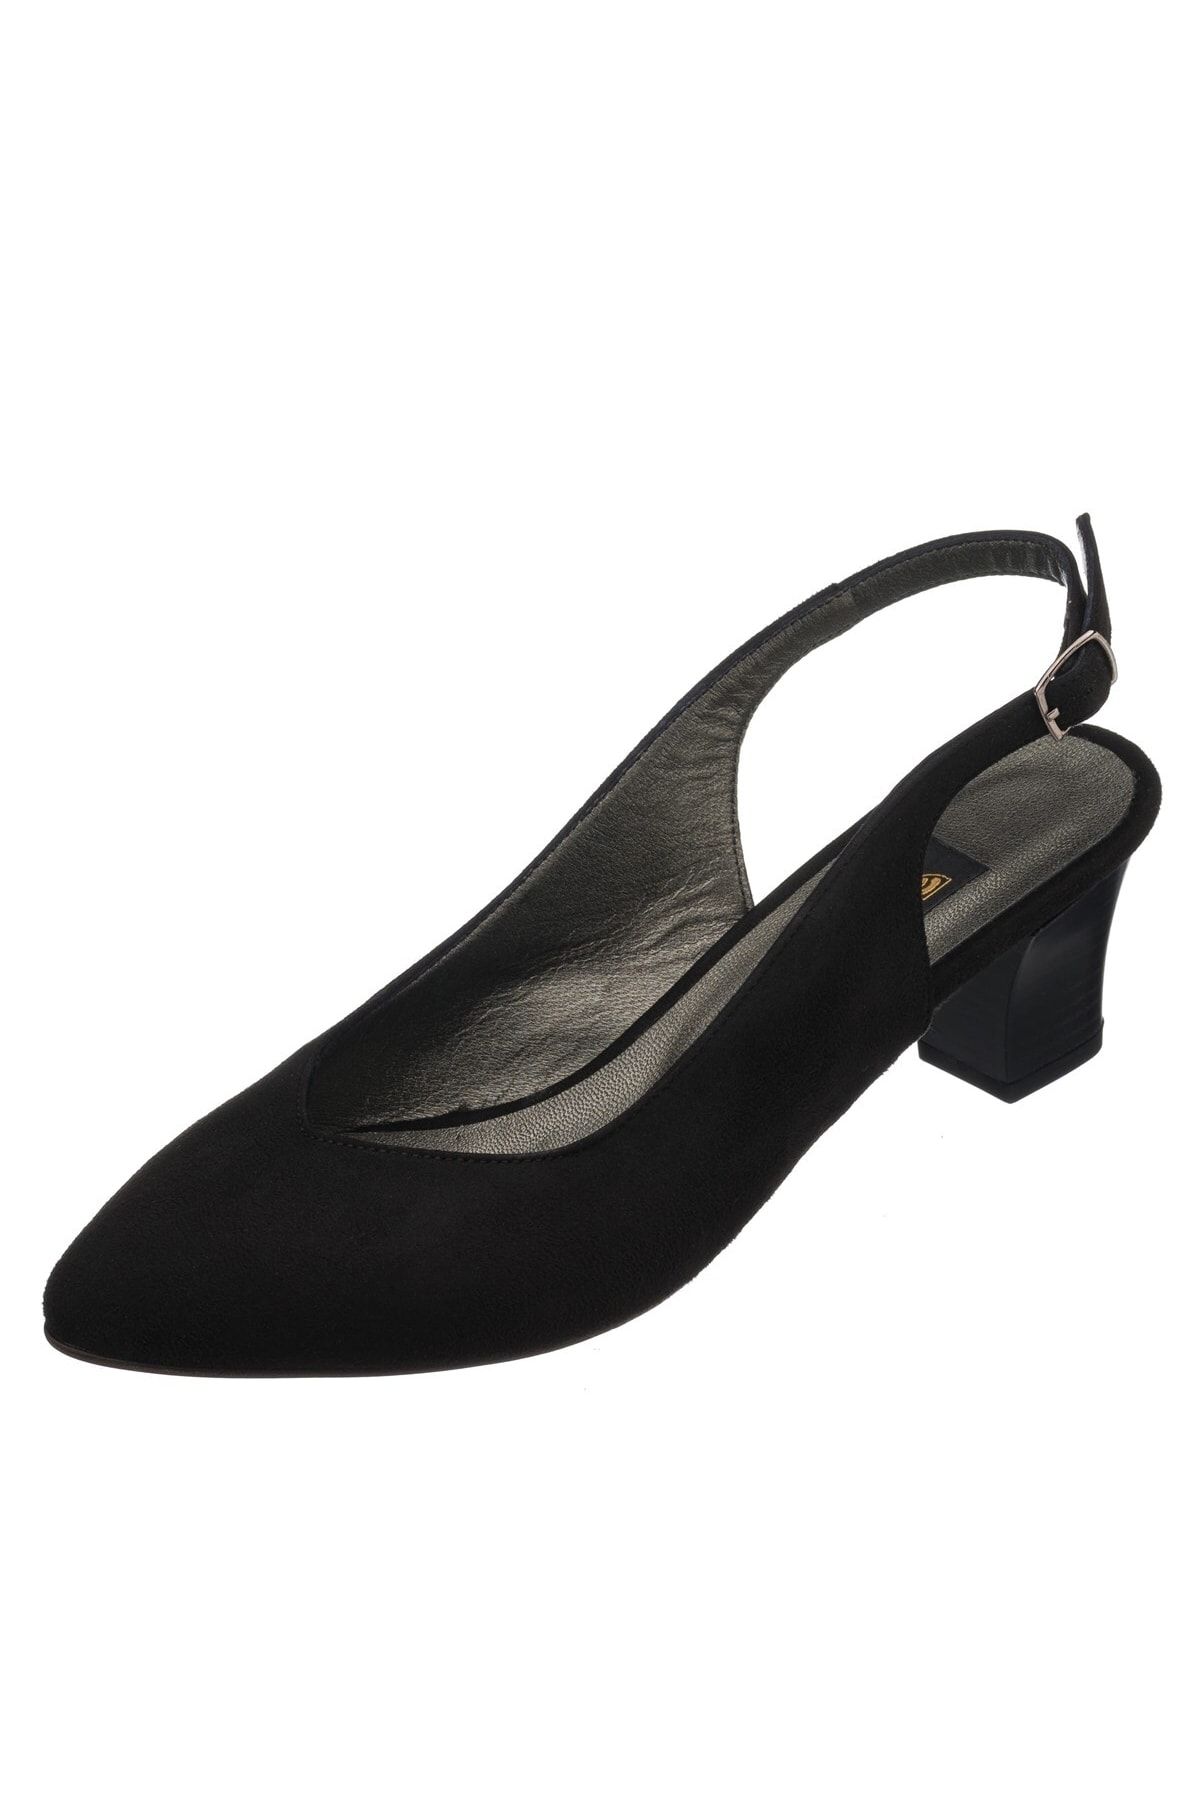 İriadam Ltf00131 Siyah Süet Kısa Topuk Rahat Geniş Kalıp Özel Seri Büyük Numara Topuklu Ayakkabı